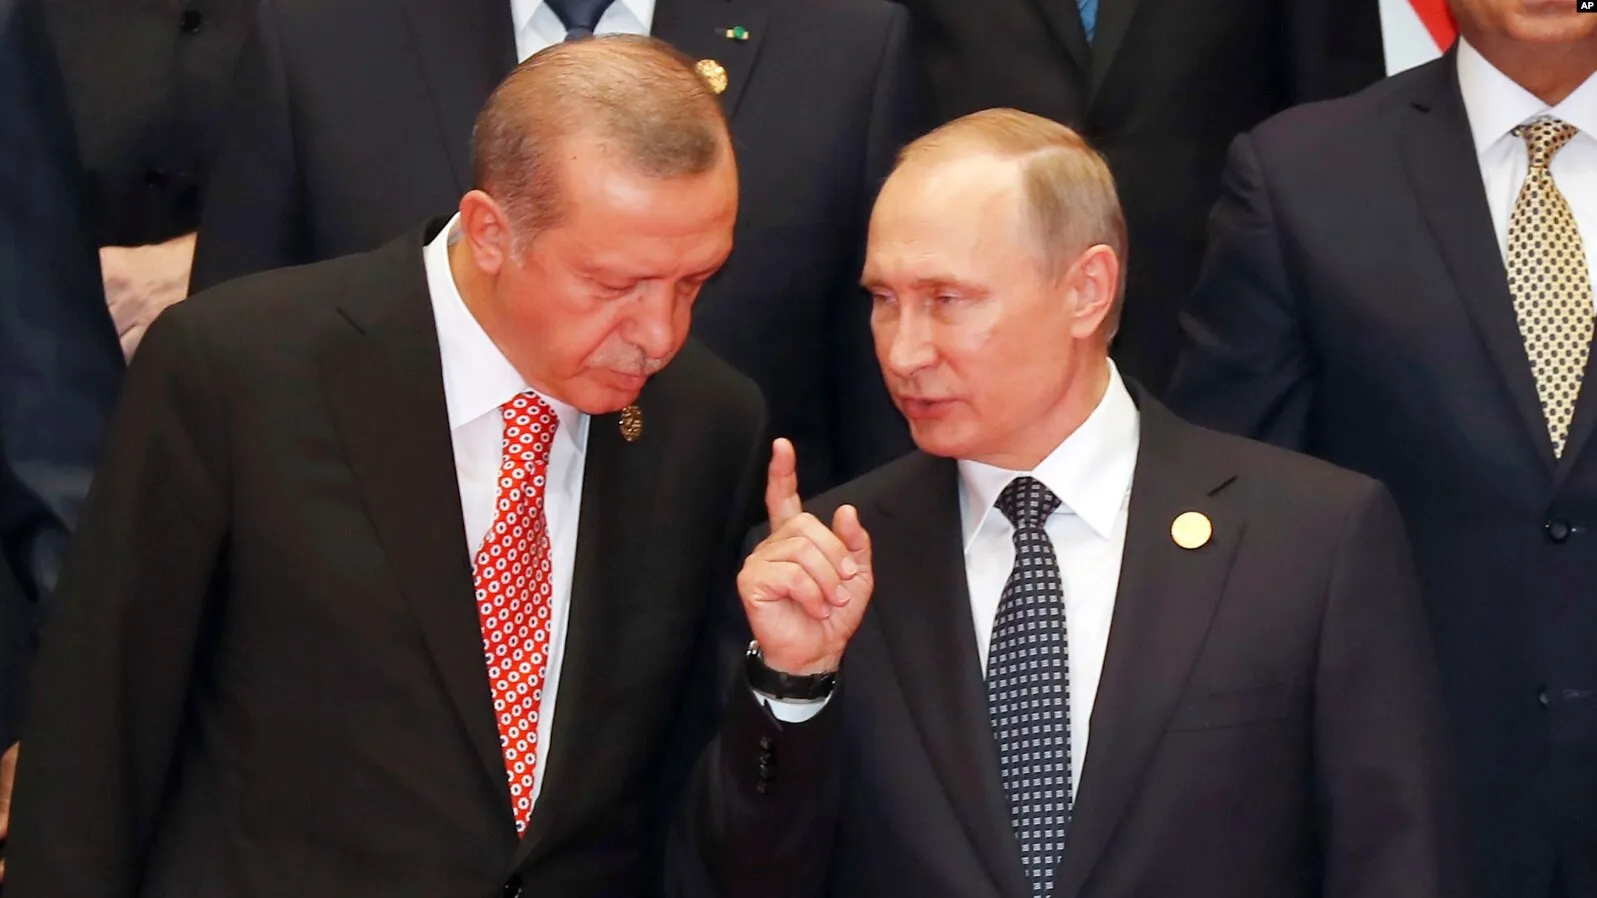 "الكرملين" يكشف فحوى الاتصال الهاتفي بين الرئيسين "بوتين وأردوغان"